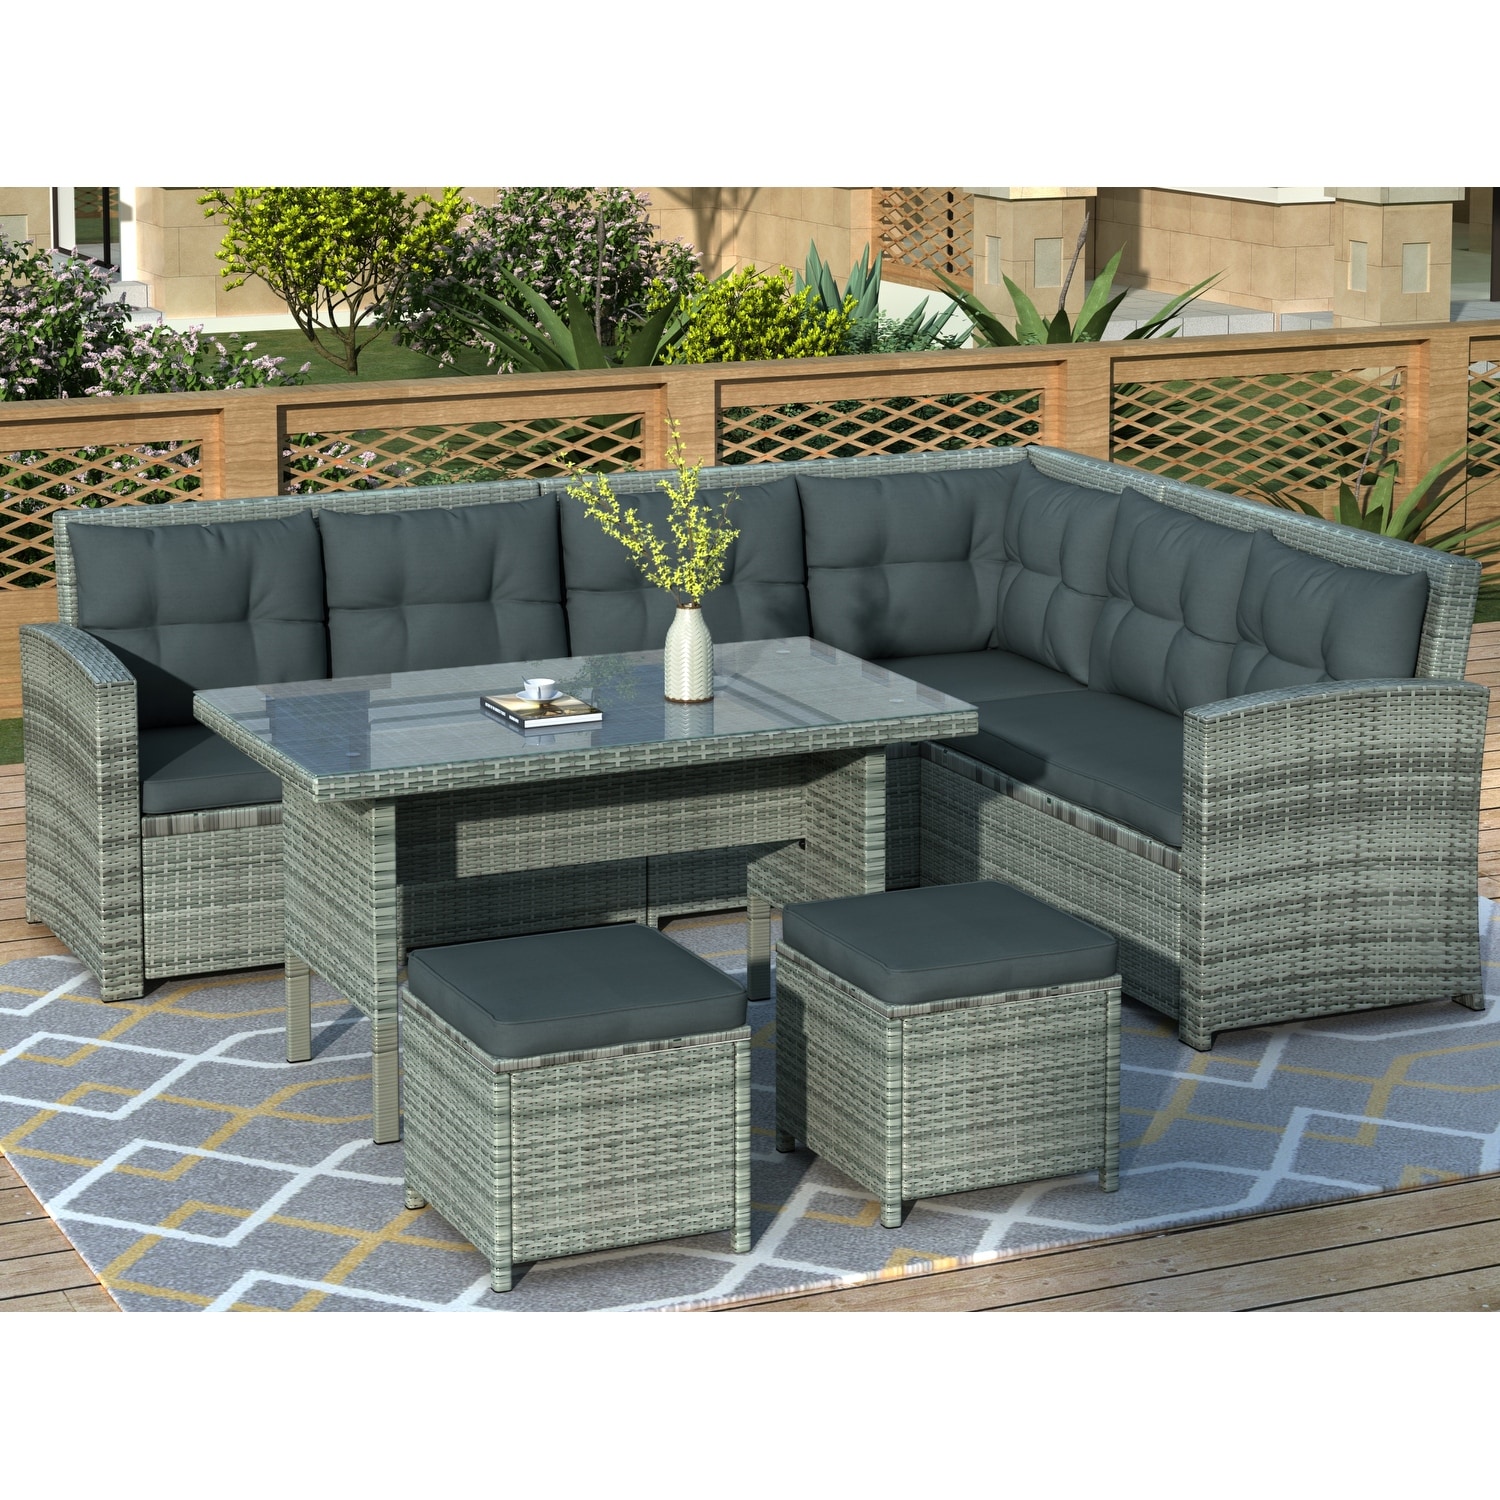 6-piece Rattan Patio Furniture Sectional Sofa Set  Seats 8